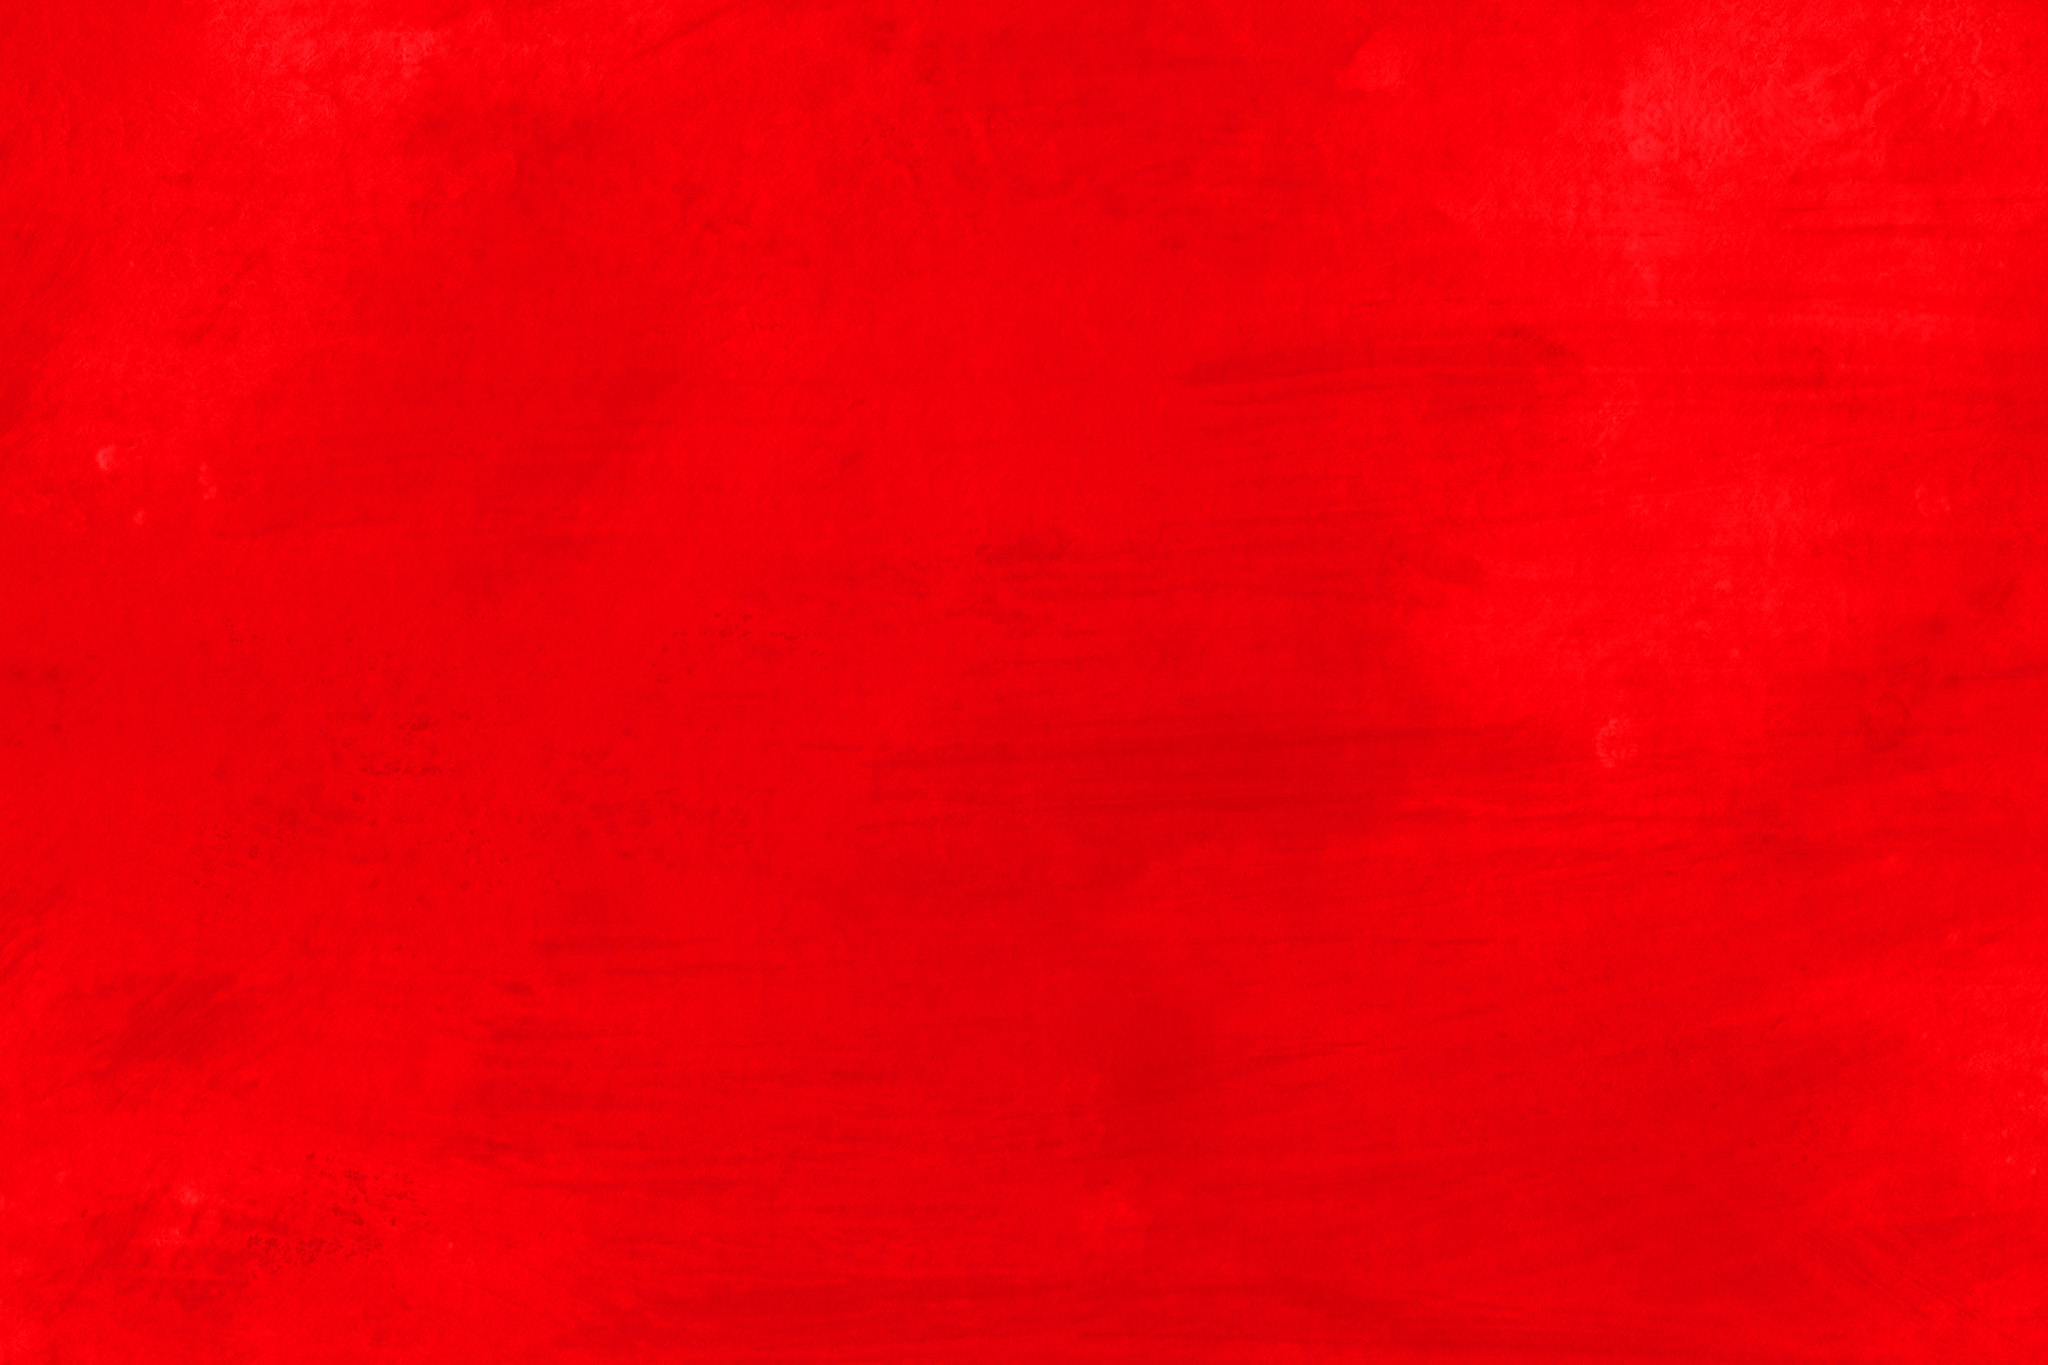 おしゃれな赤のかっこいい壁紙 の画像素材を無料ダウンロード 1 フリー素材 Beiz Images